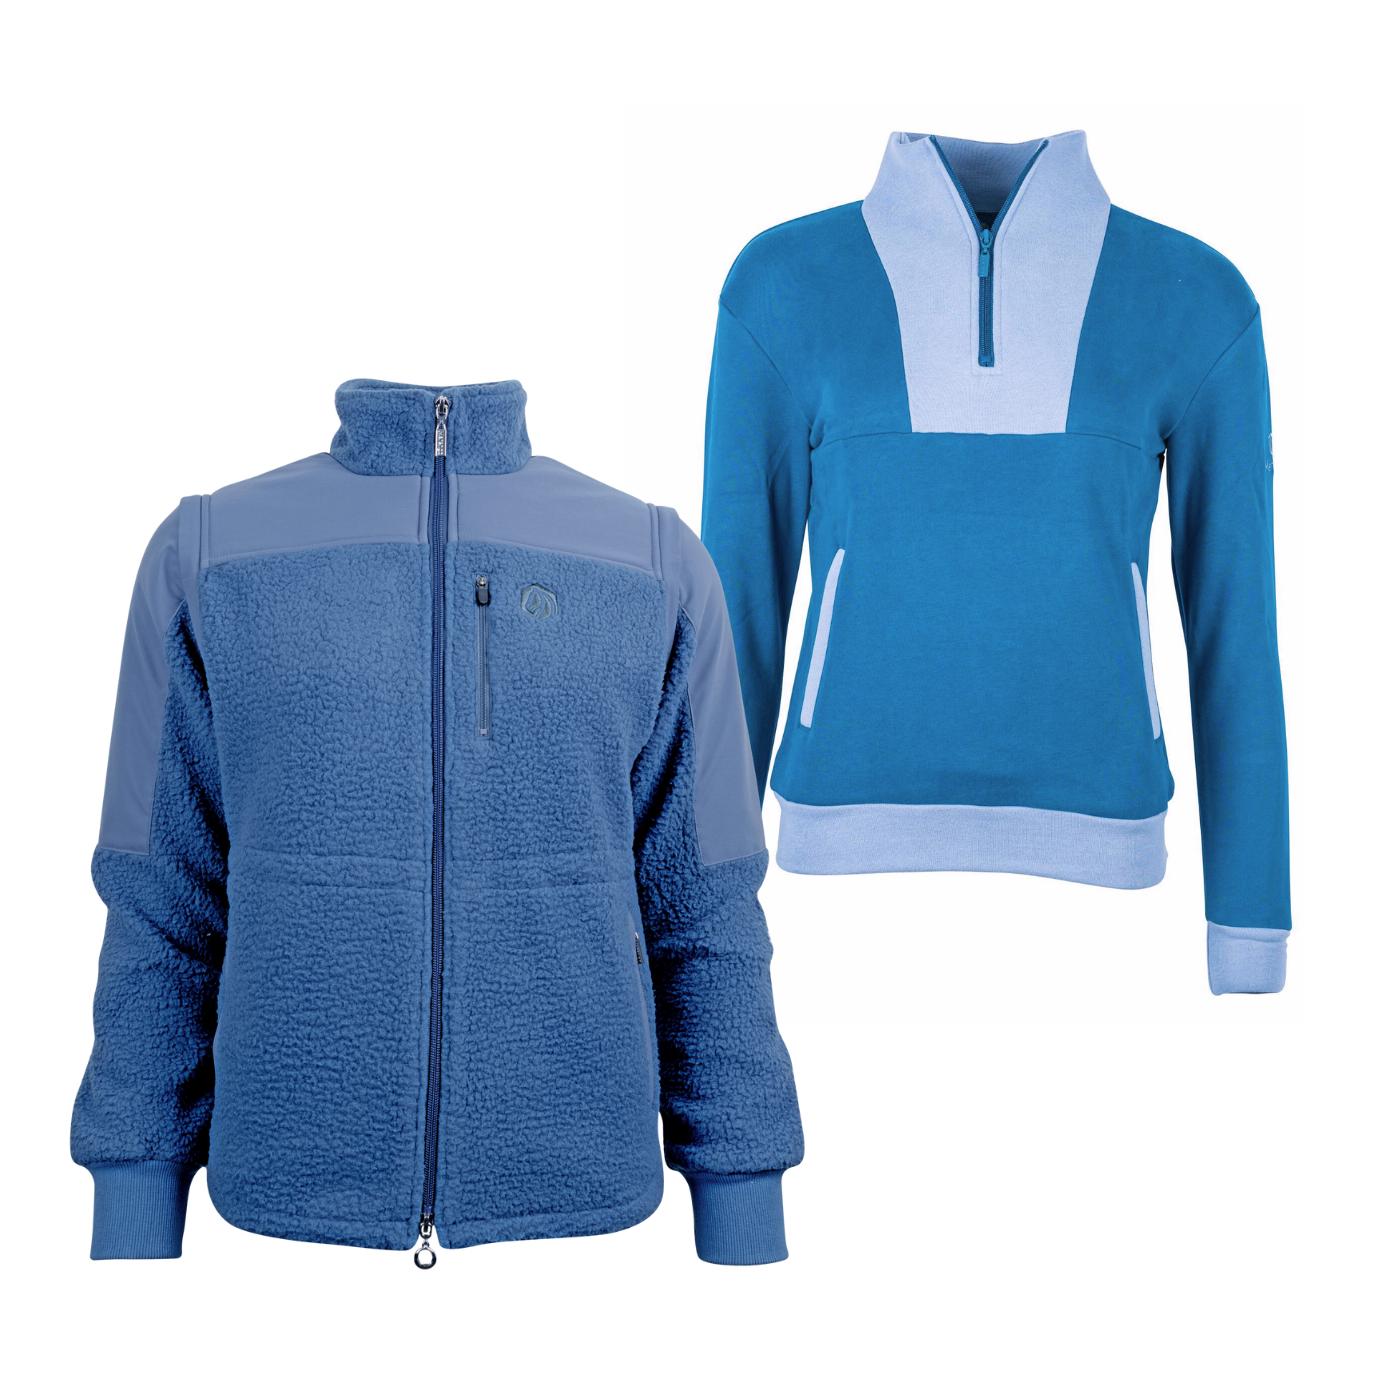 Marengo Outfit-Set Cosy Rides - Teddyfleece-Jacke & Zip Sweatshirt Farbe: Calm Blue / Ocean Blue, Grösse Pullover: XL, Grösse Jacke: L von Marengo